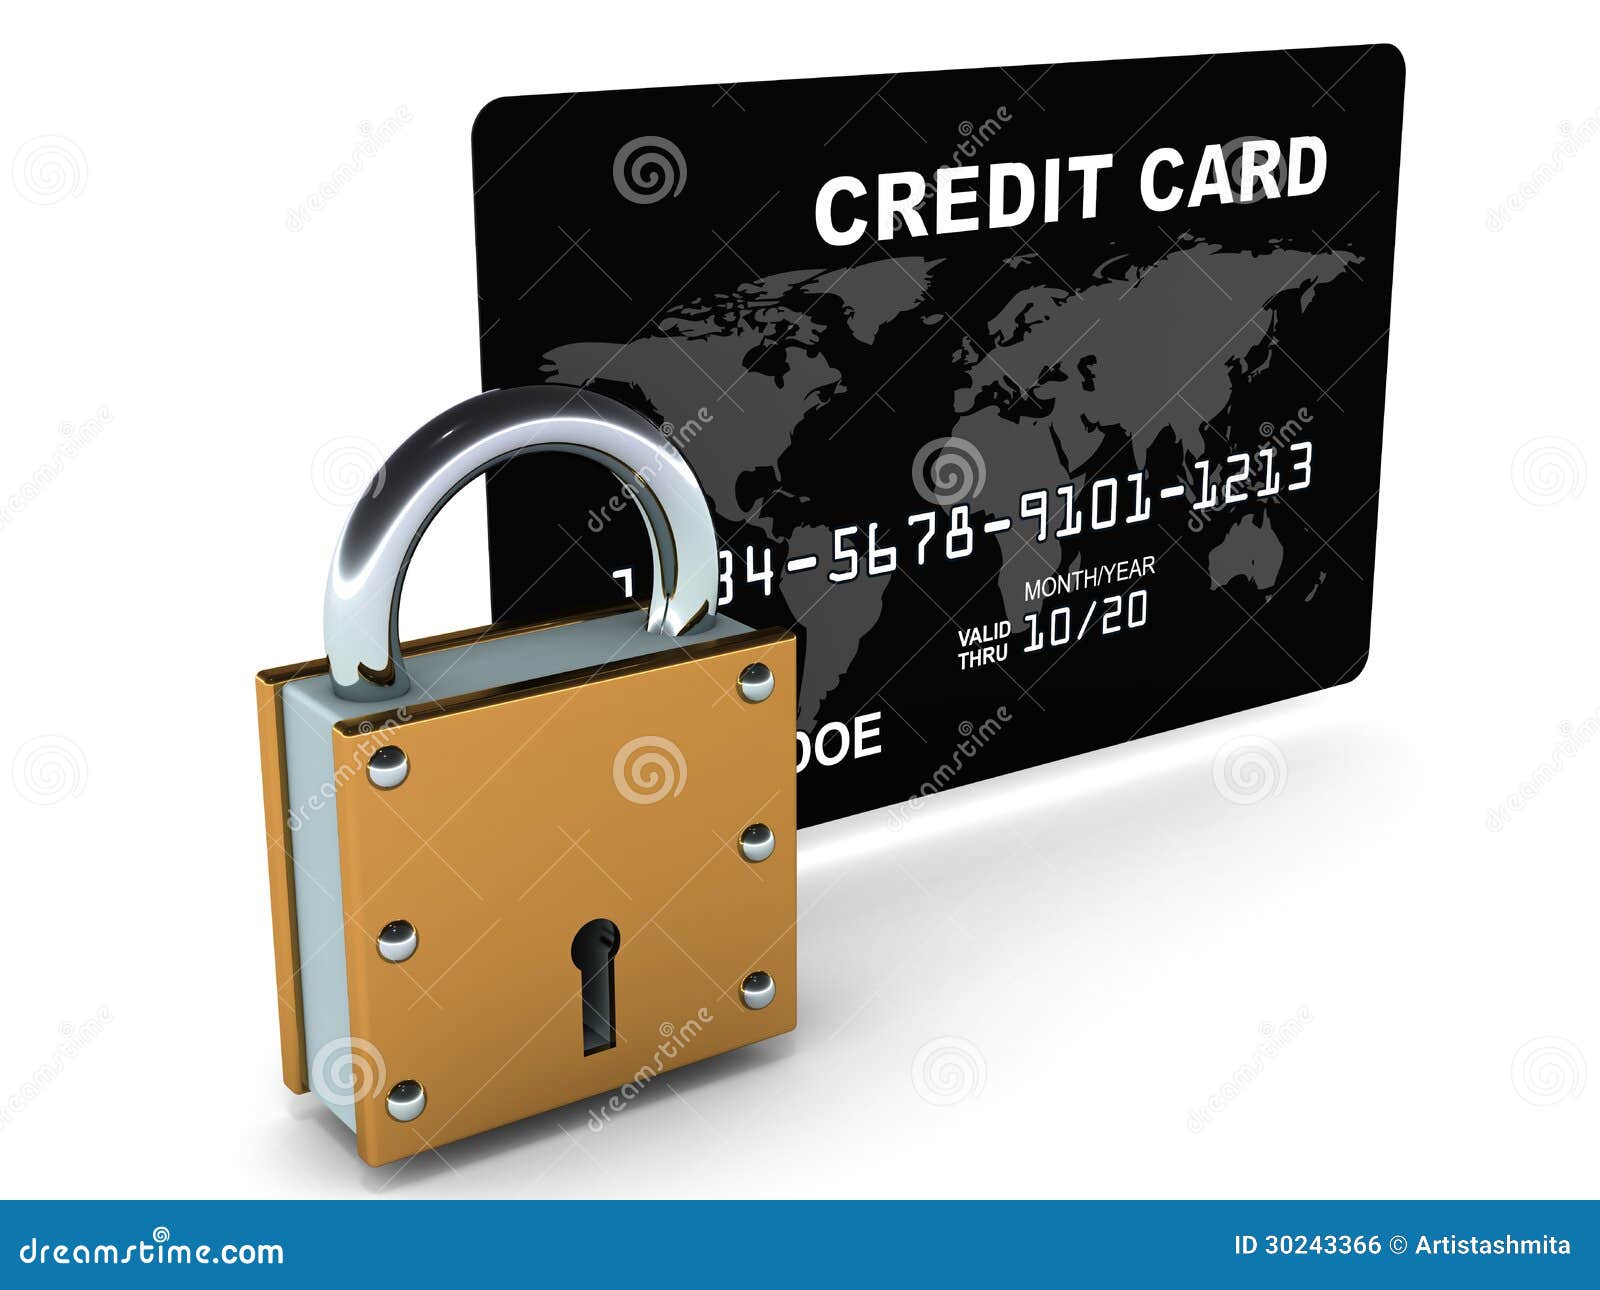 Is onlyfans credit card safe